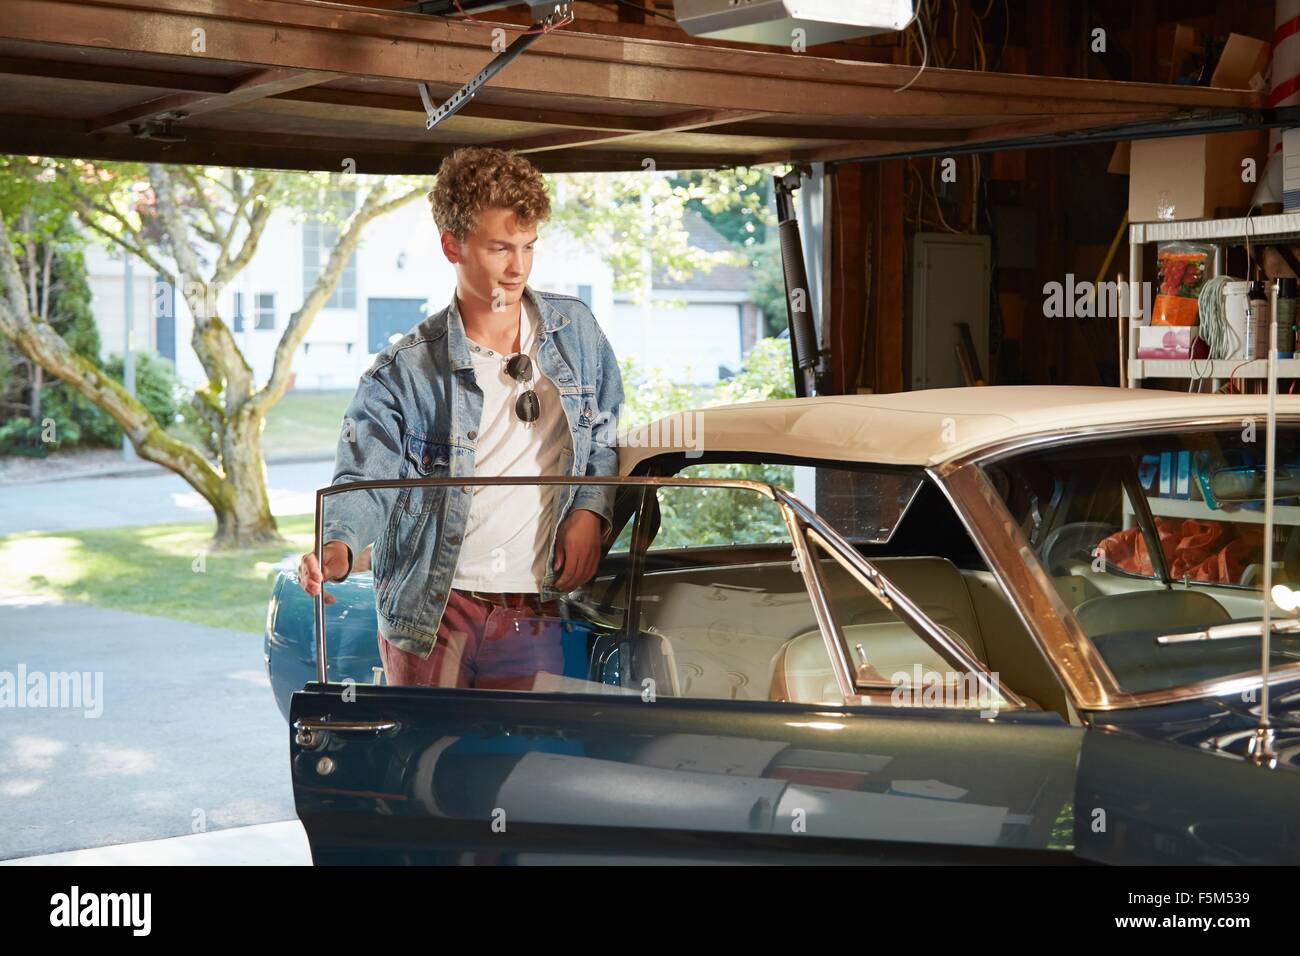 Young man in garage opening door of vintage car Stock Photo